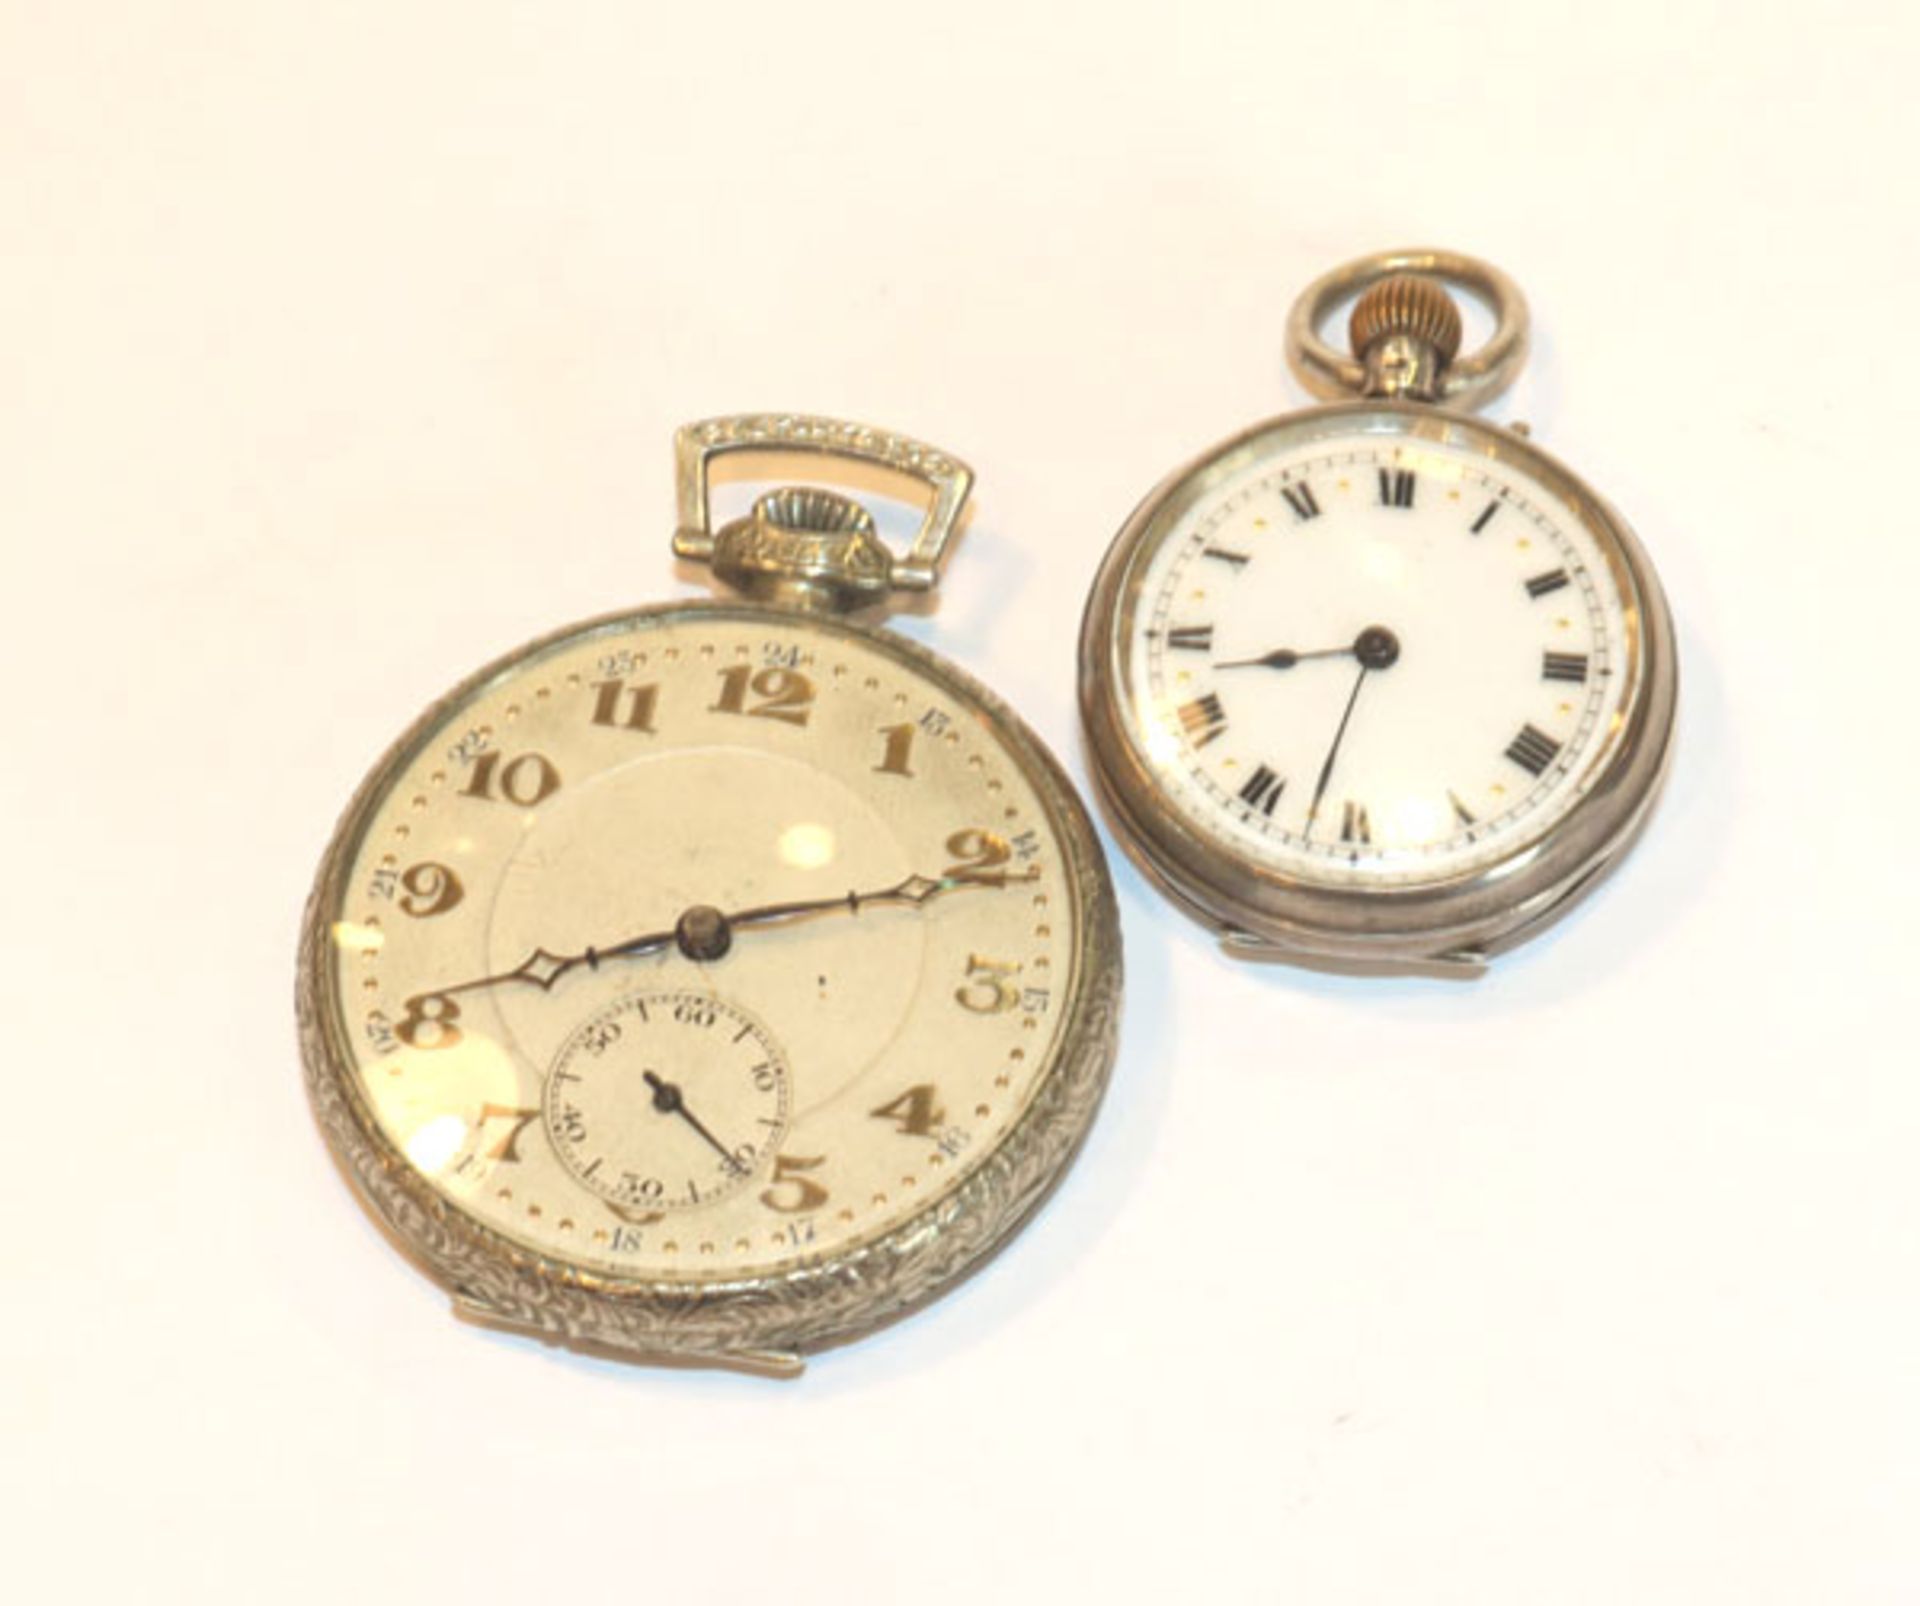 Taschenuhr, 800 Silber, rückseitig graviert, D 3 cm, und Nickel Taschenuhr, Zifferblatt mit